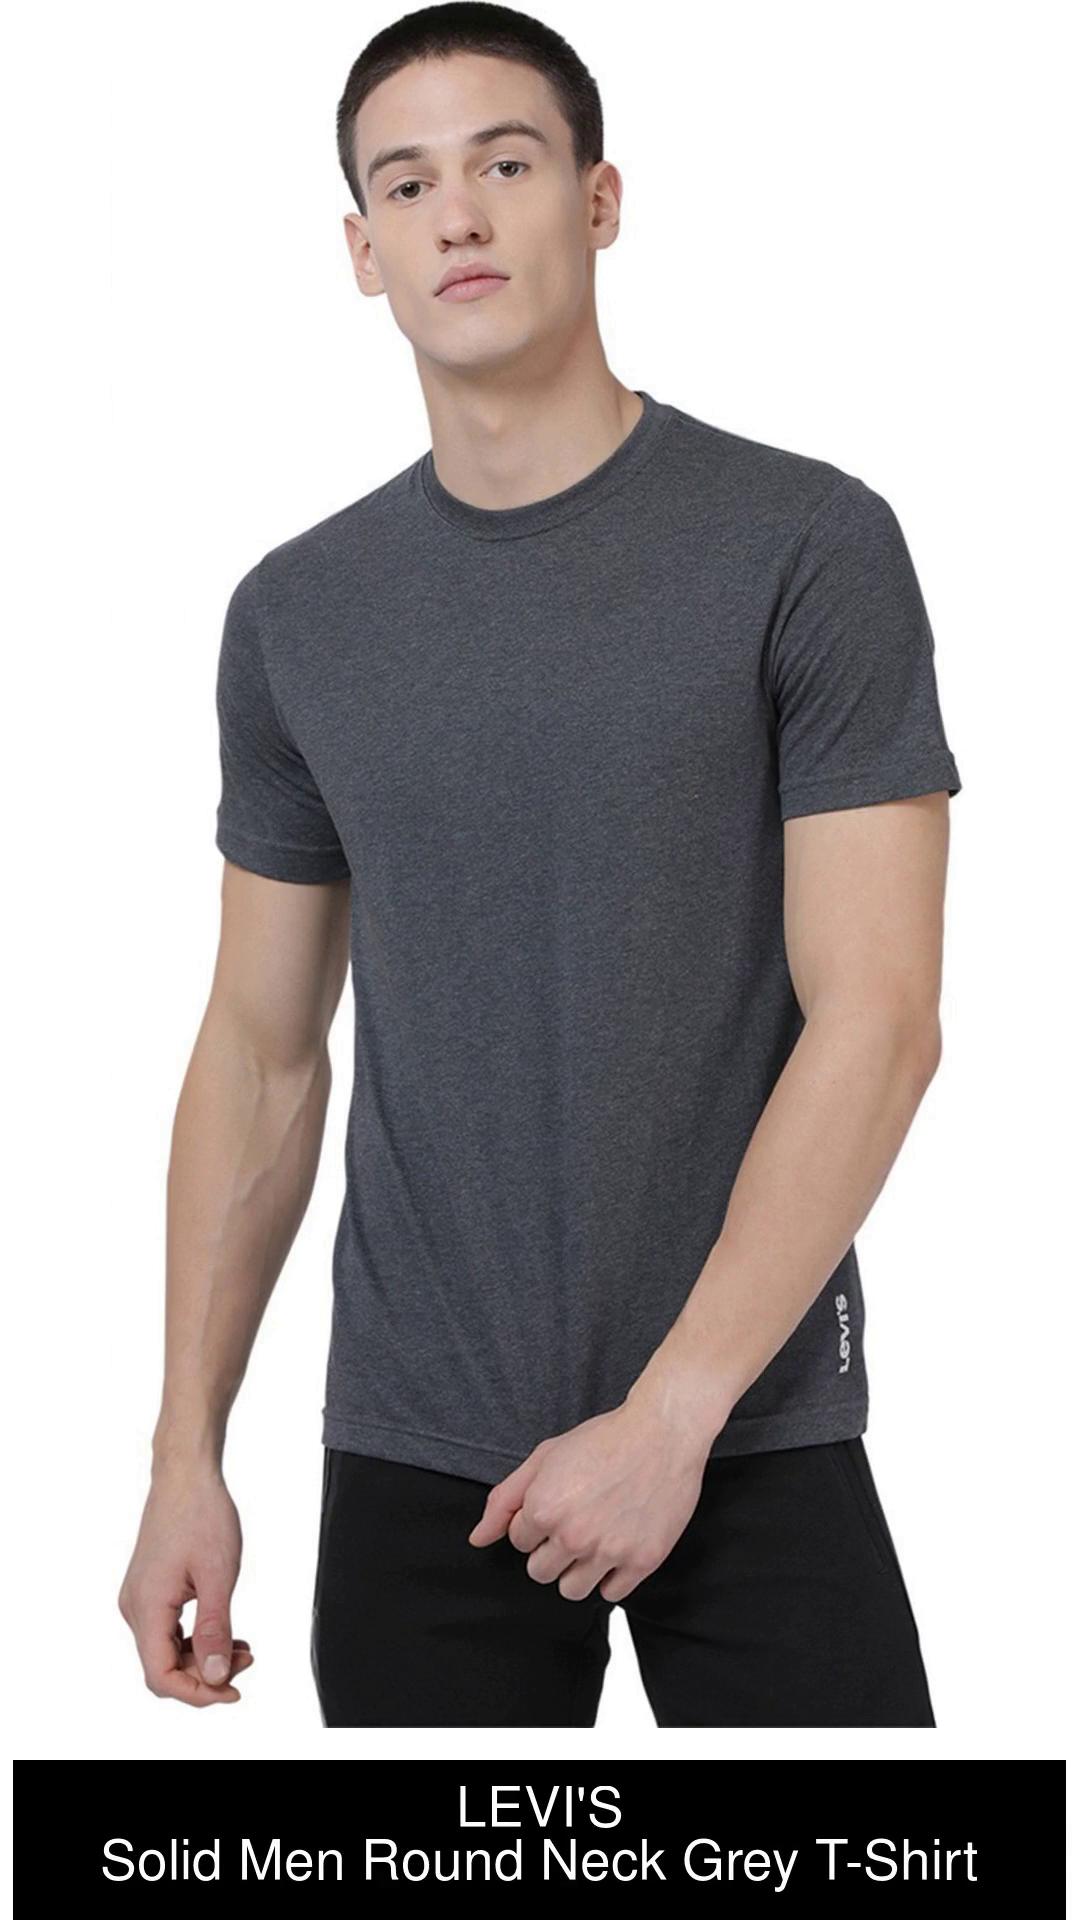 Levi's cotton t-shirt gray color